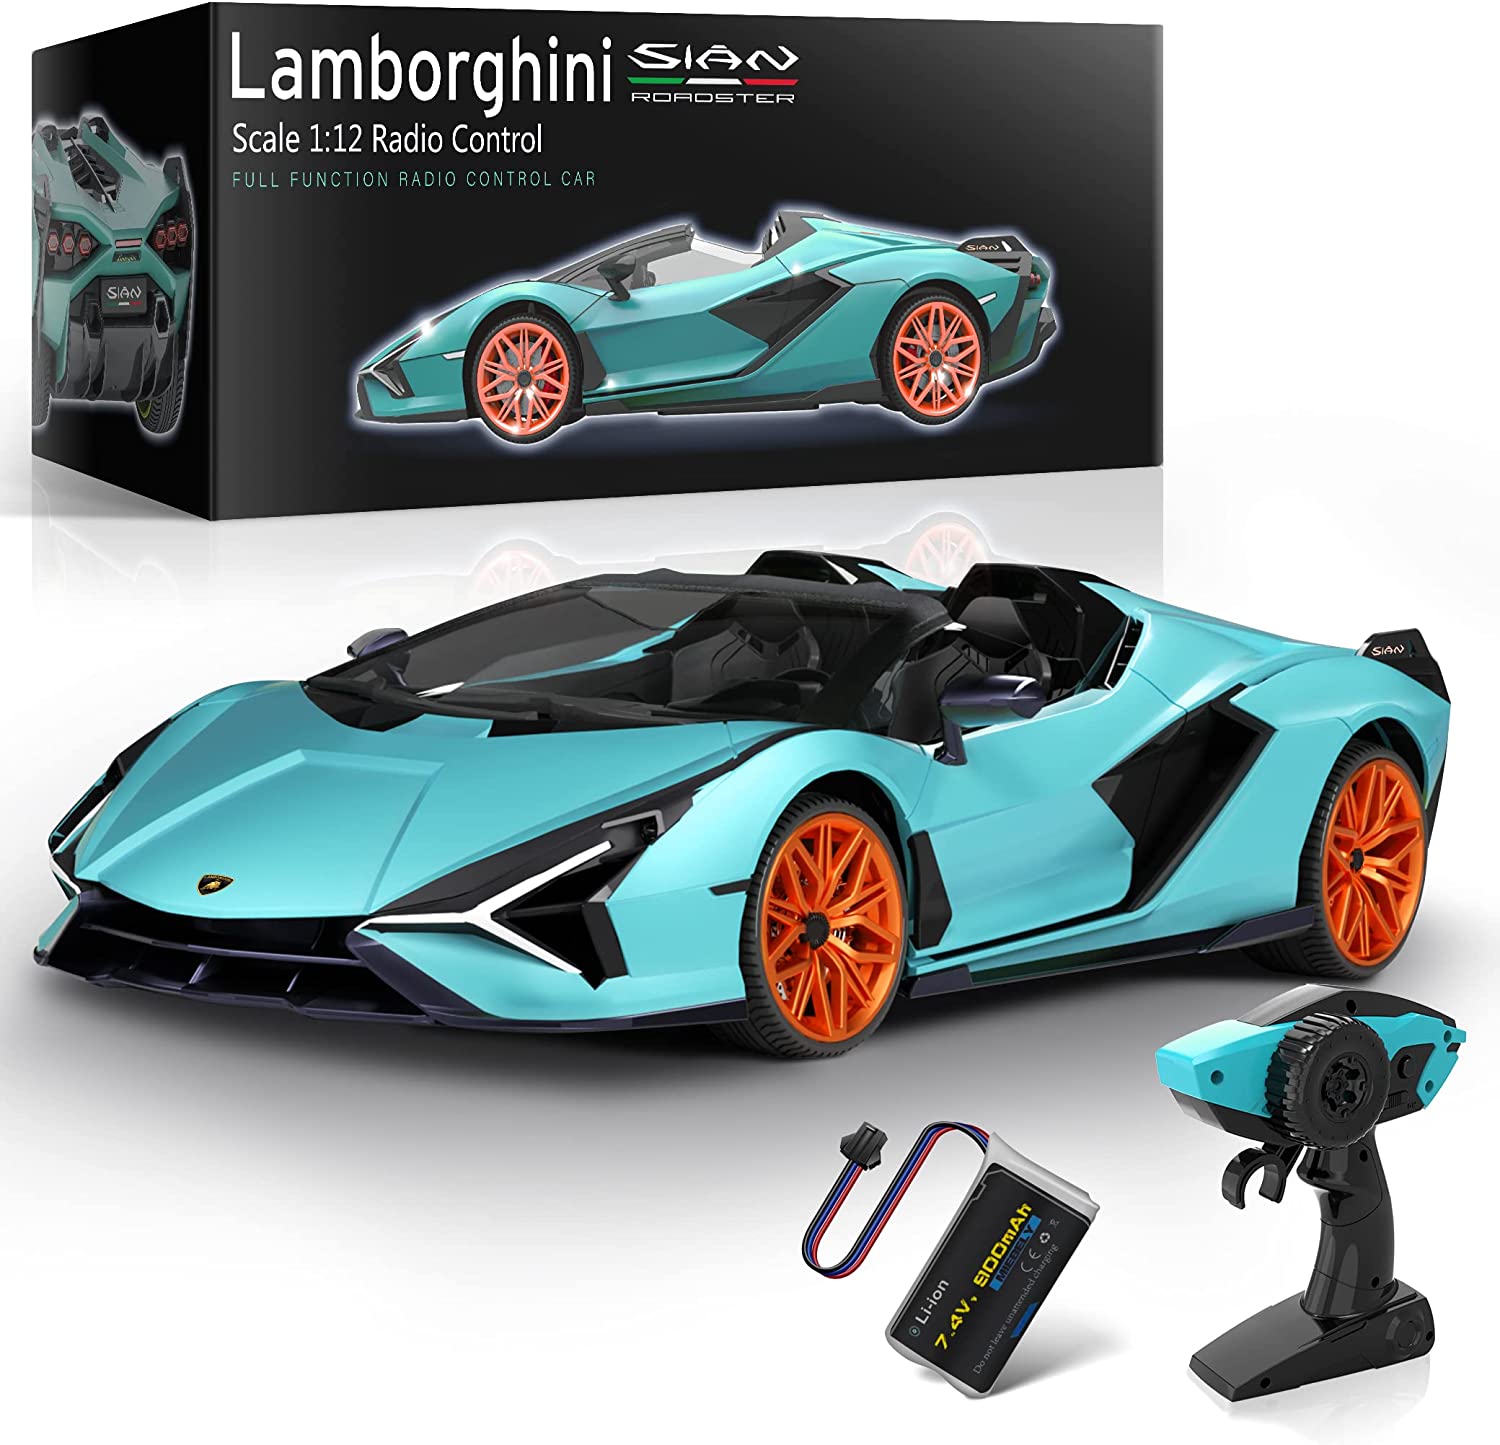 MIEBELY Lamborghini Remote Control Car, 1:12 Scale Lambo Toy Car 